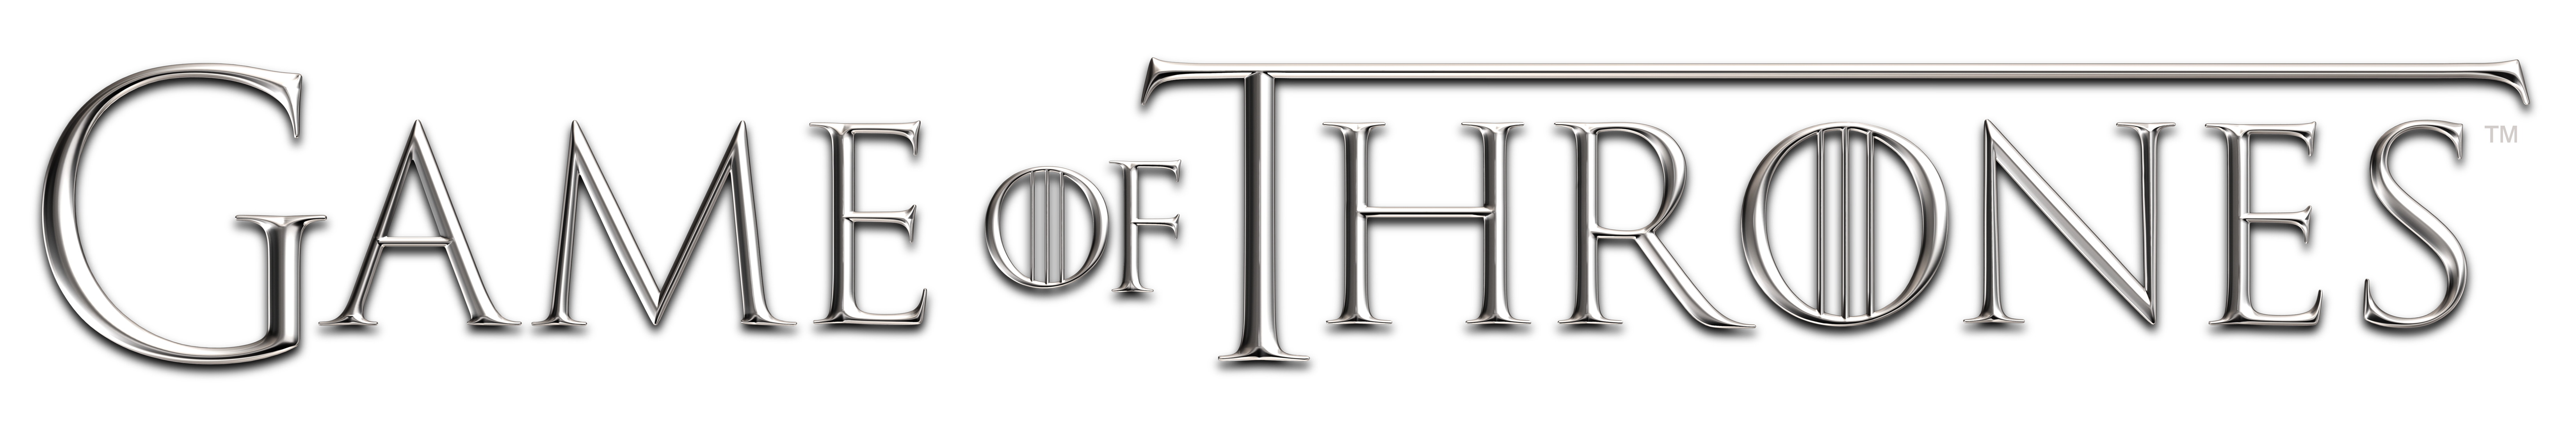 Spiel von Thrones Logo PNG HQ Foto